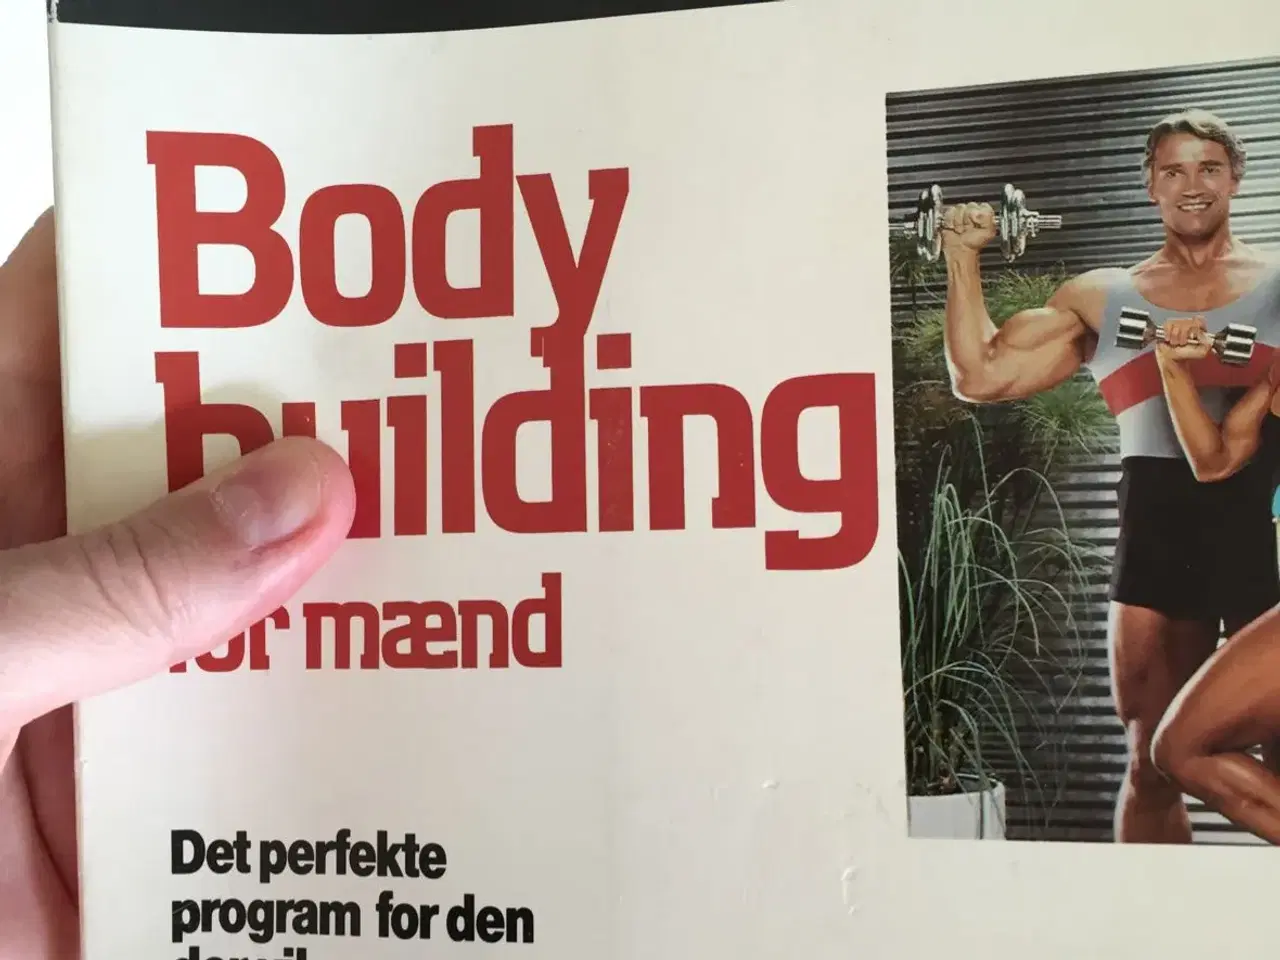 Billede 1 - Bodybuilding for mænd af Arnold Schwarz.